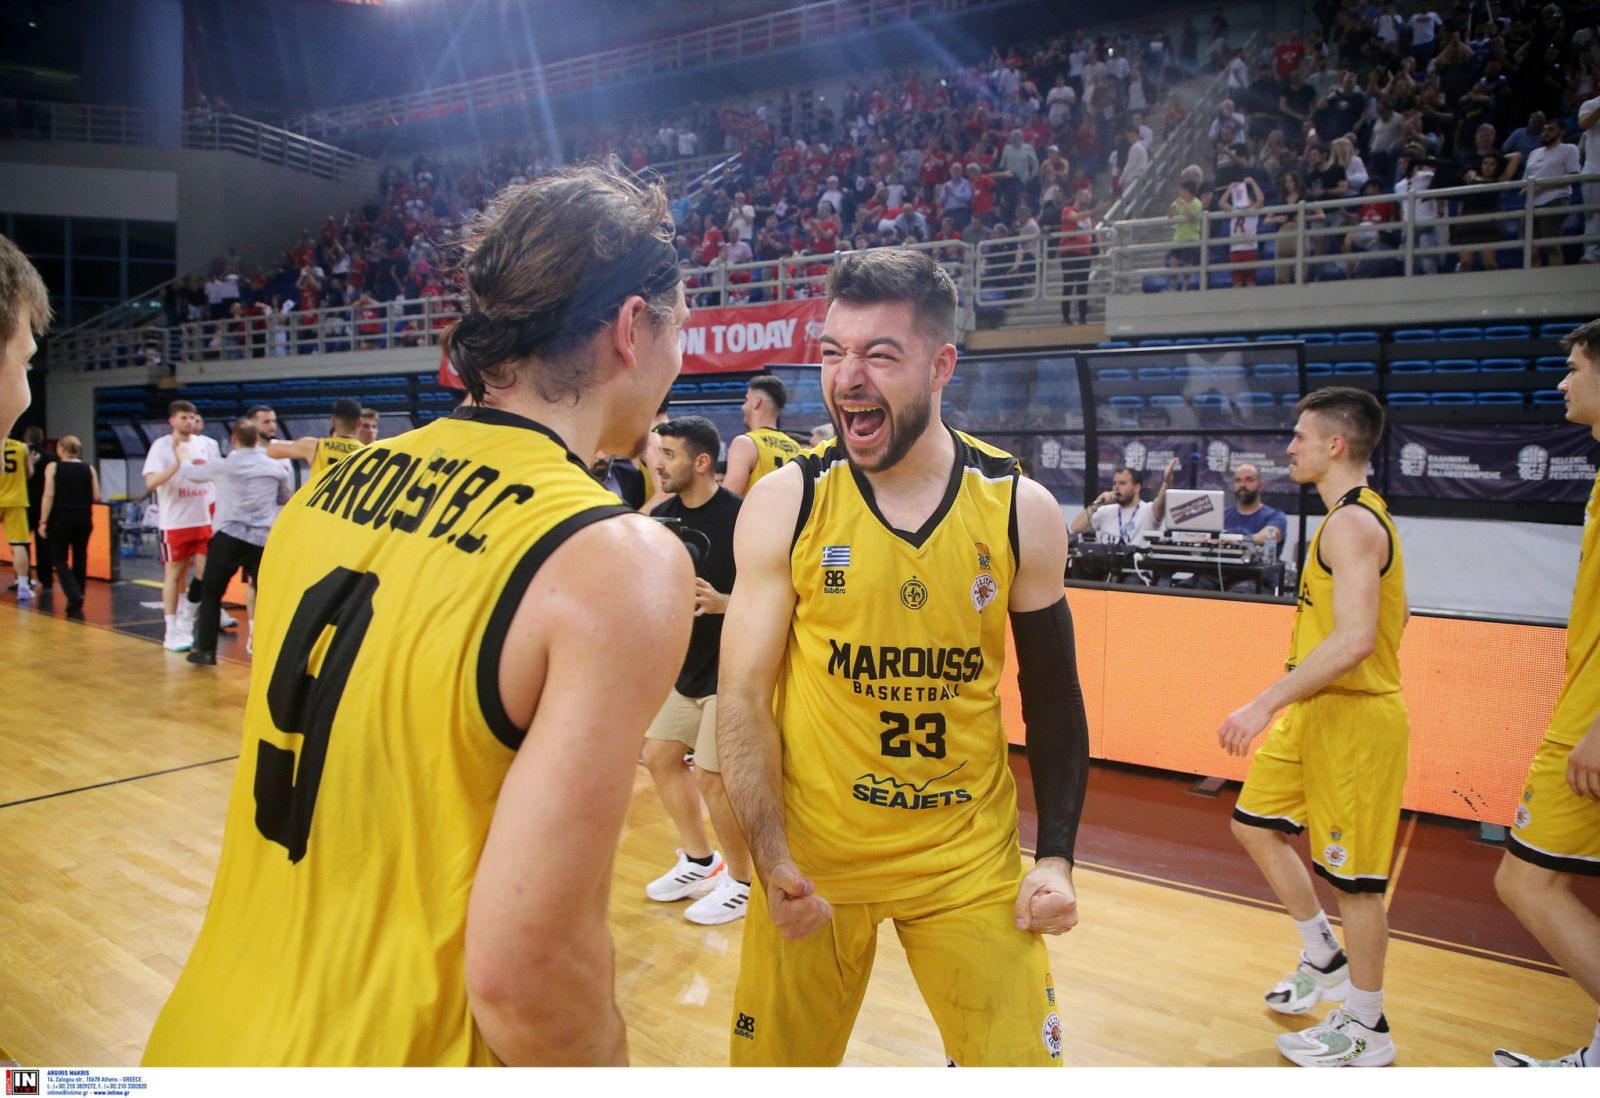 Σταυρακούκας στο basketblog.gr: “Από το καλοκαίρι σκεφτόμασταν αυτήν την στιγμή, ελπίζω να μείνω στο Μαρούσι”